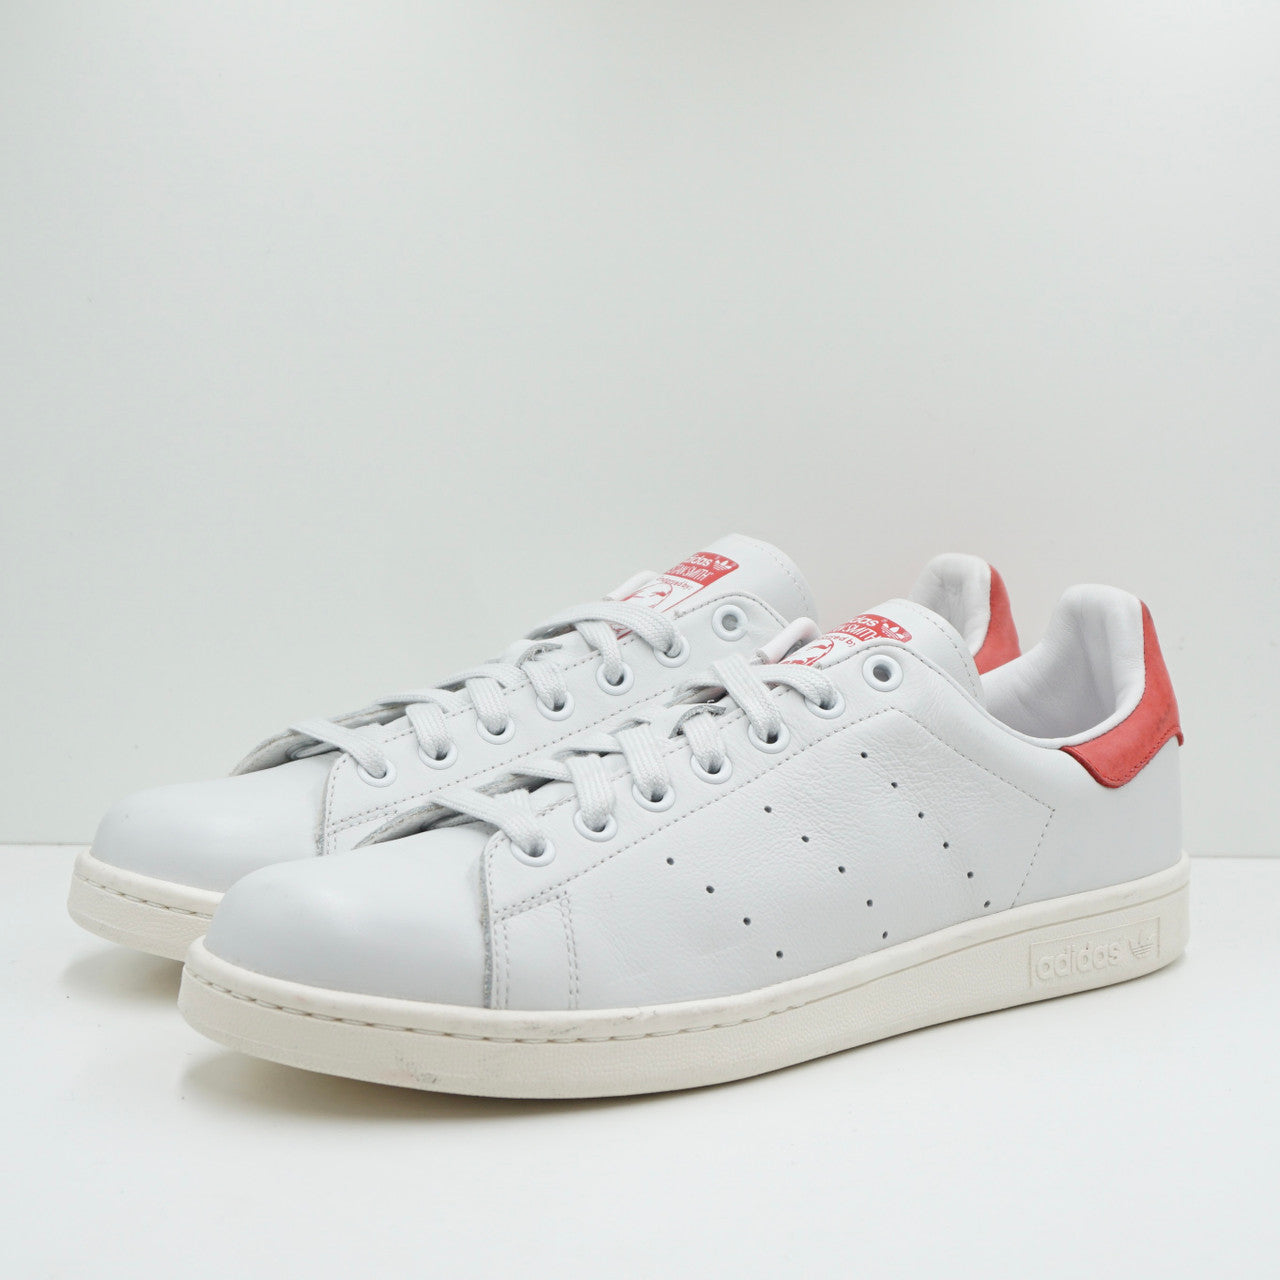 Adidas Stan Smith White/Red